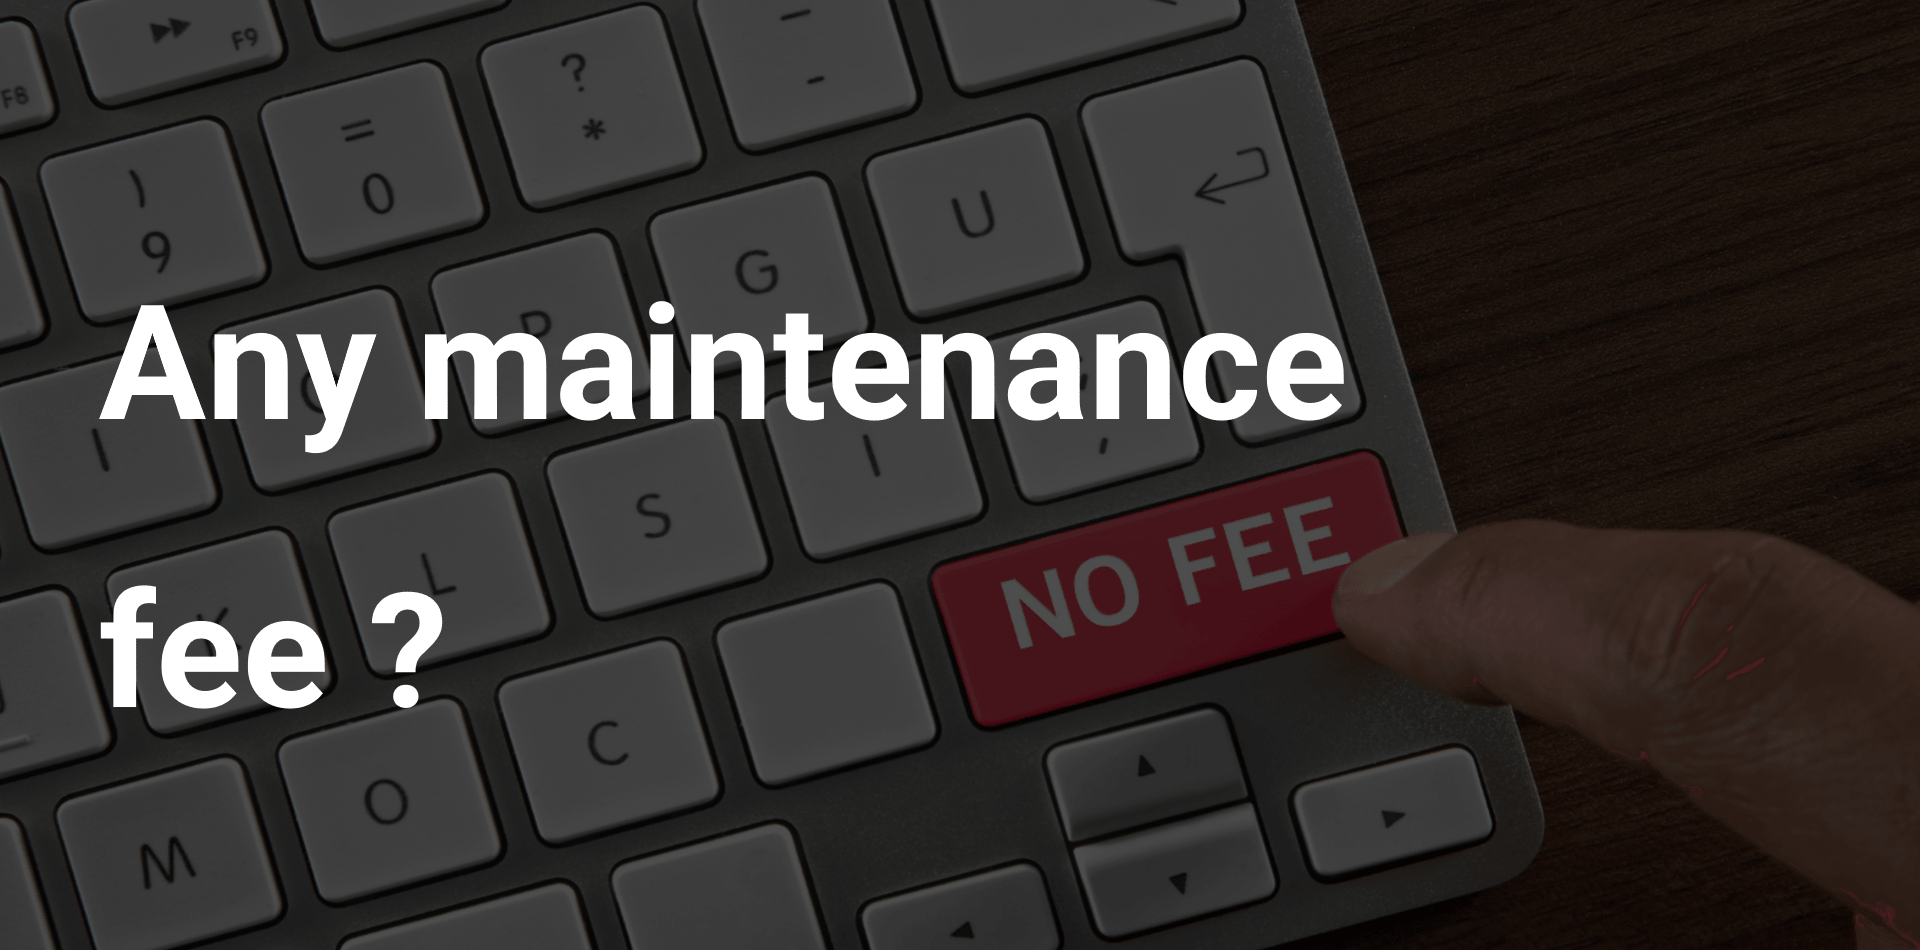 Any maintenance fee?